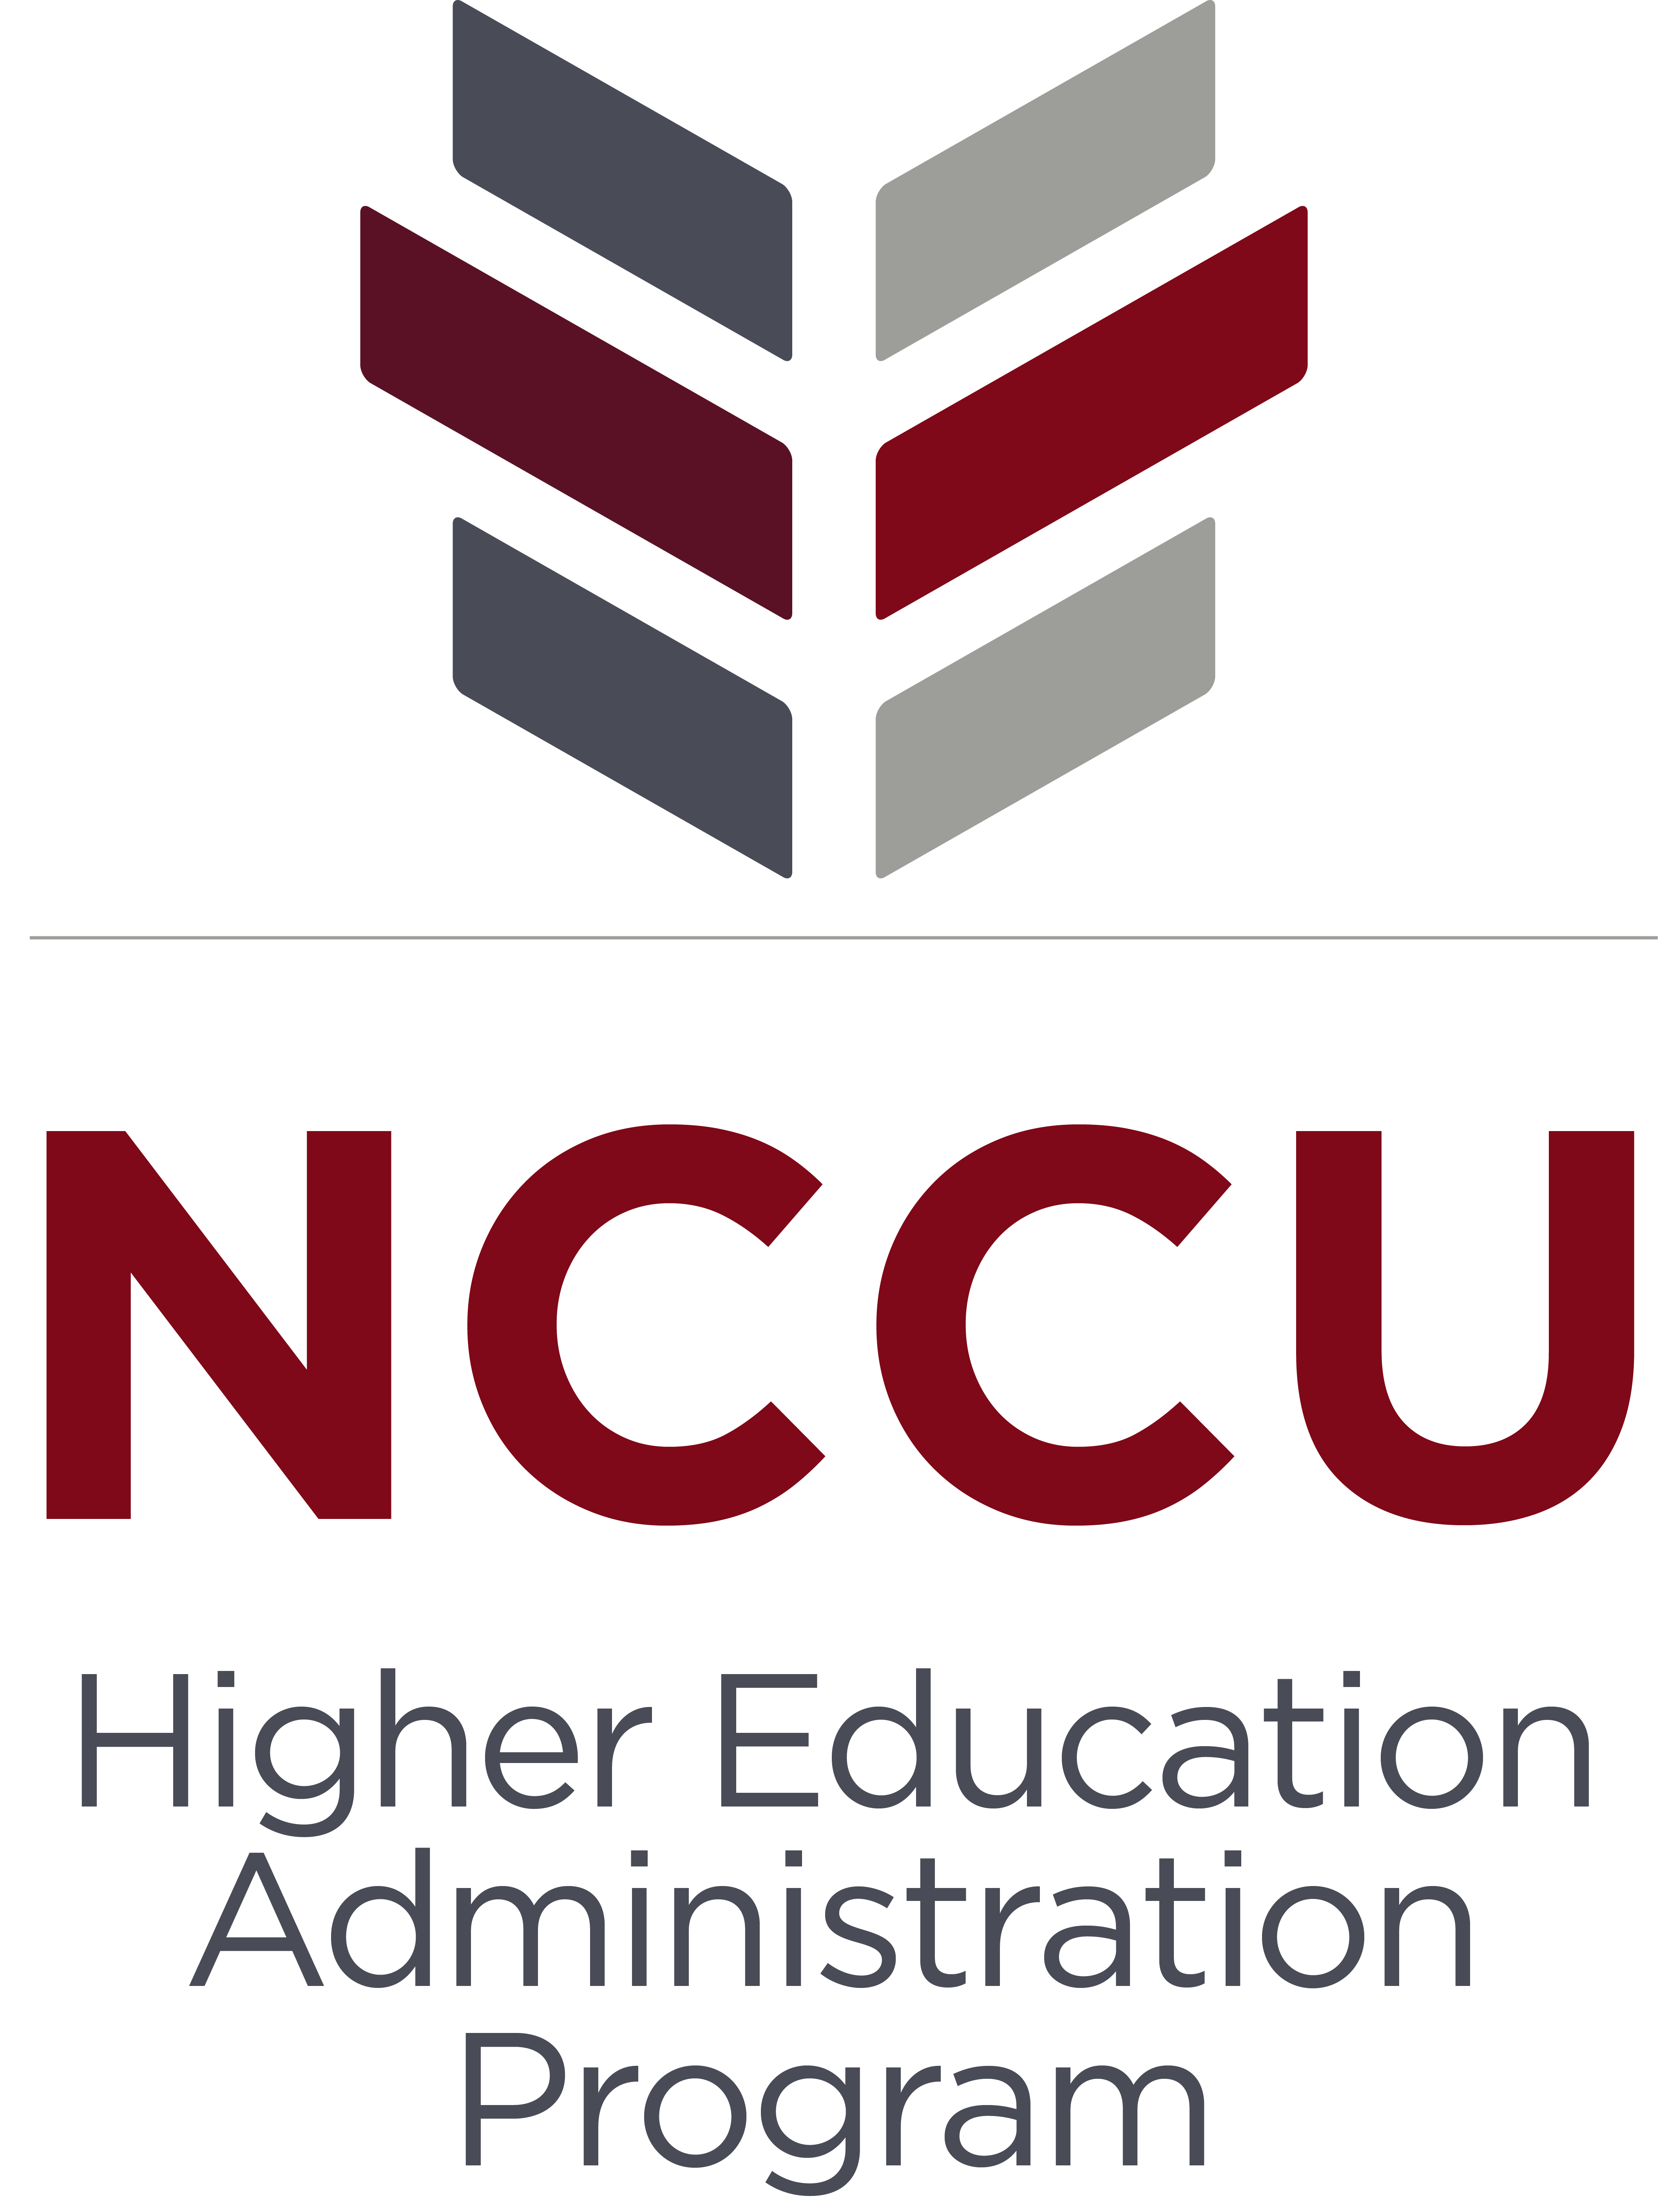 NCCU HEA logo